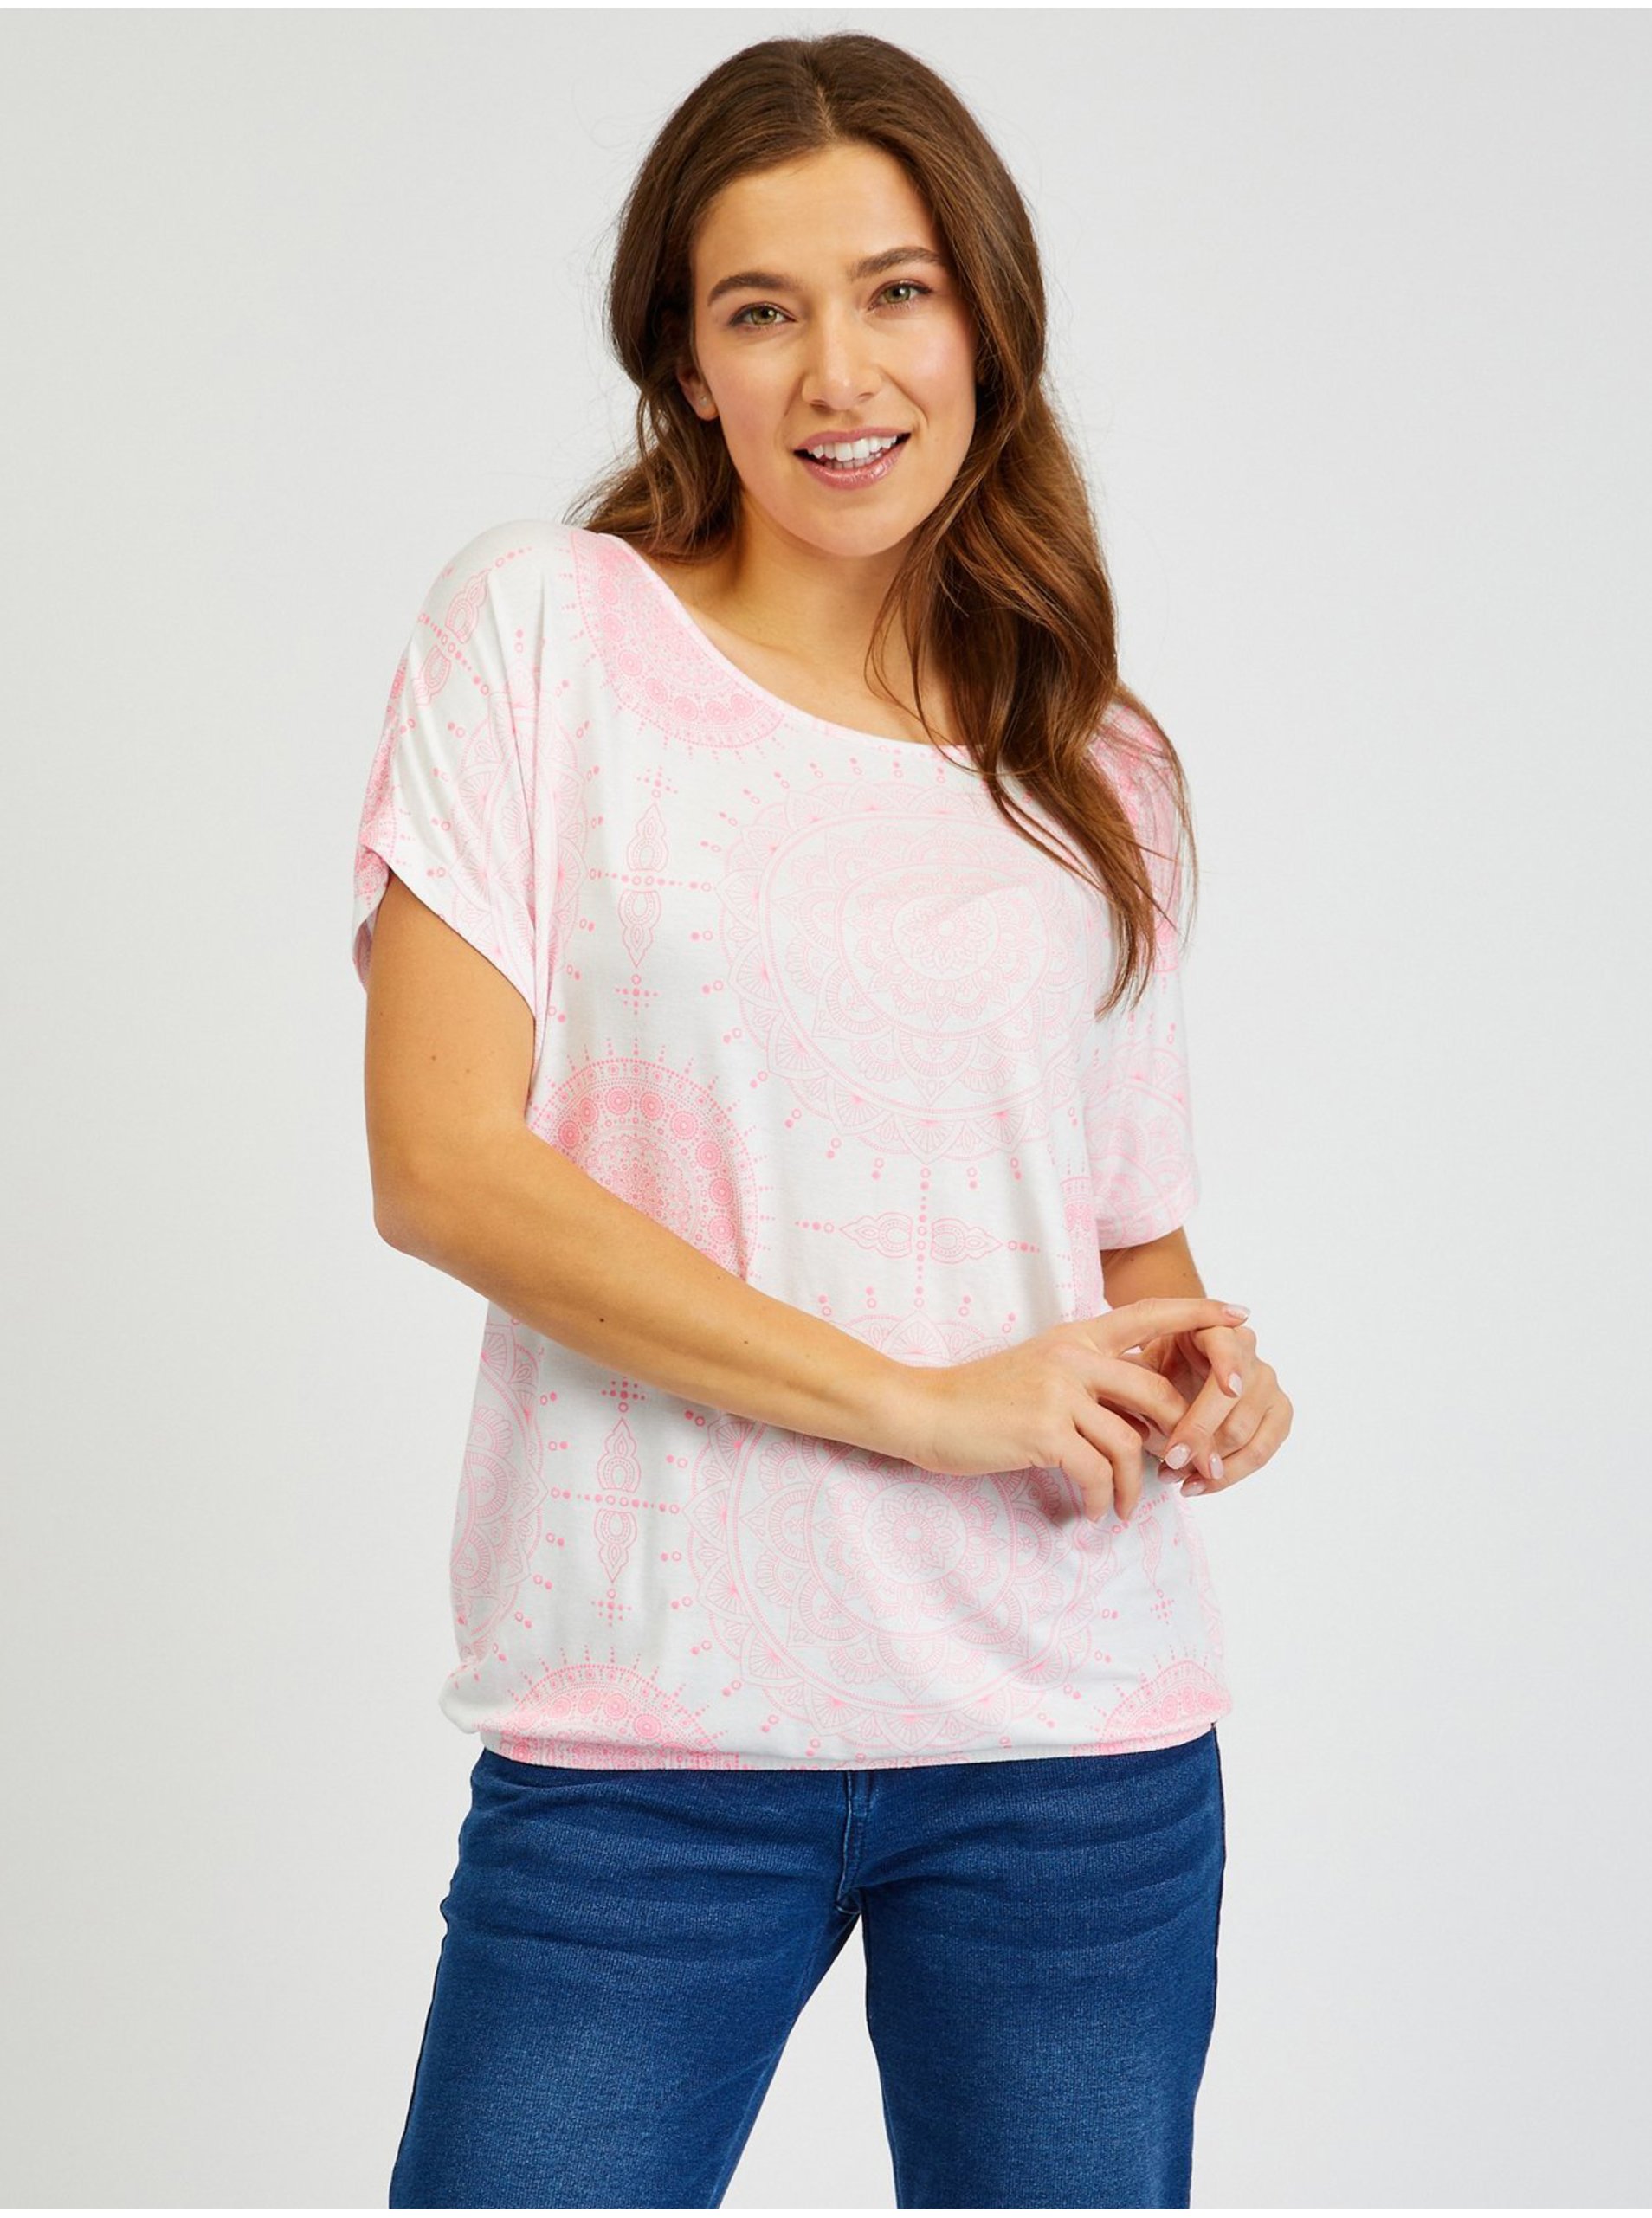 E-shop Bílo-růžové dámské vzorované tričko SAM73 Taurus